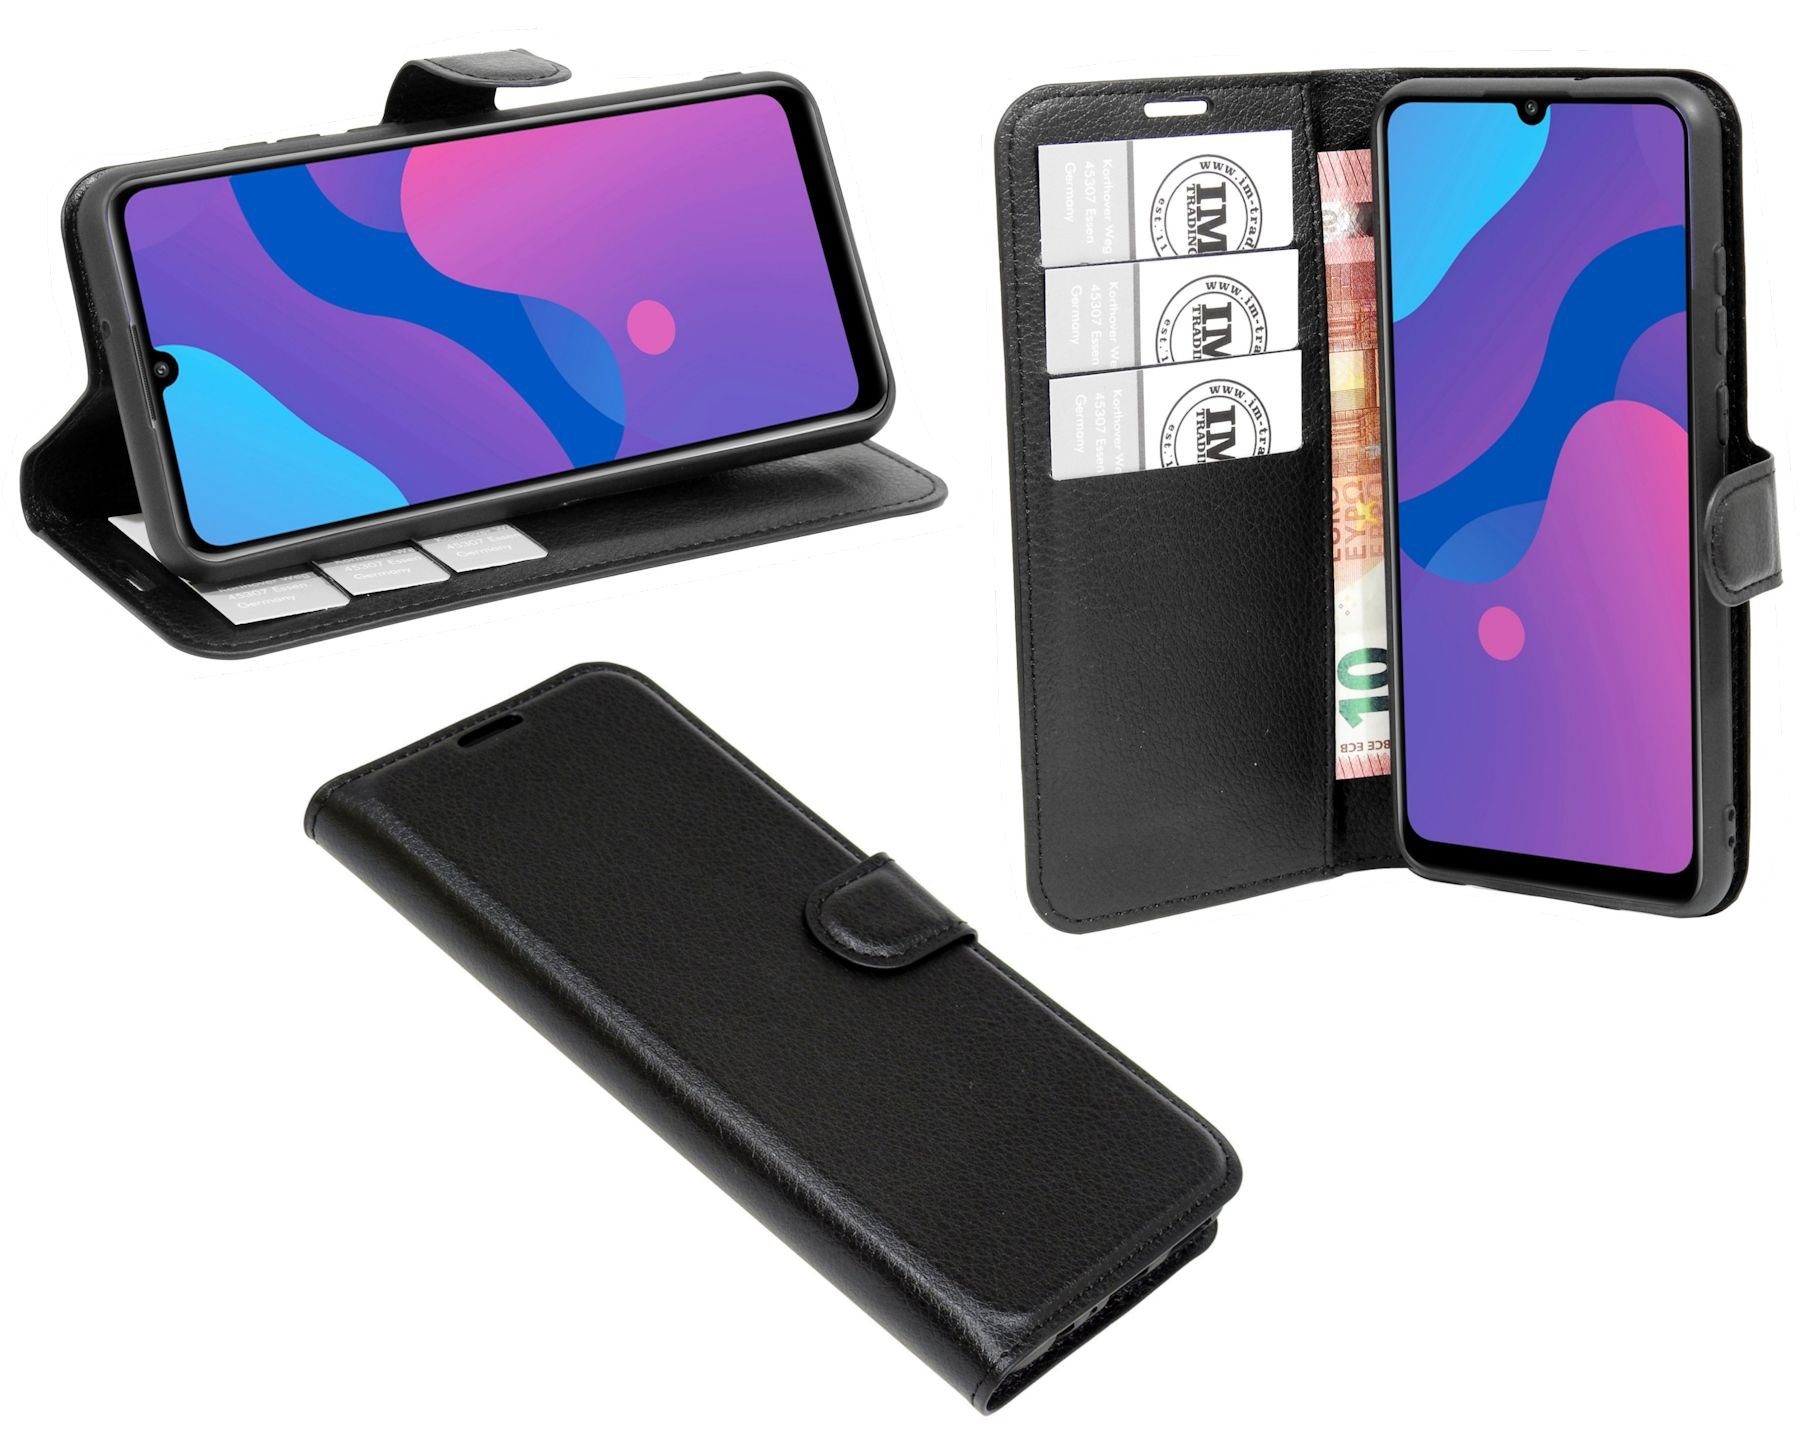 cofi1453 Handyhülle Hülle Tasche für Xiaomi Mi 8, Kunstleder Schutzhülle Handy Wallet Case Cover mit Kartenfächern, Standfunktion Schwarz